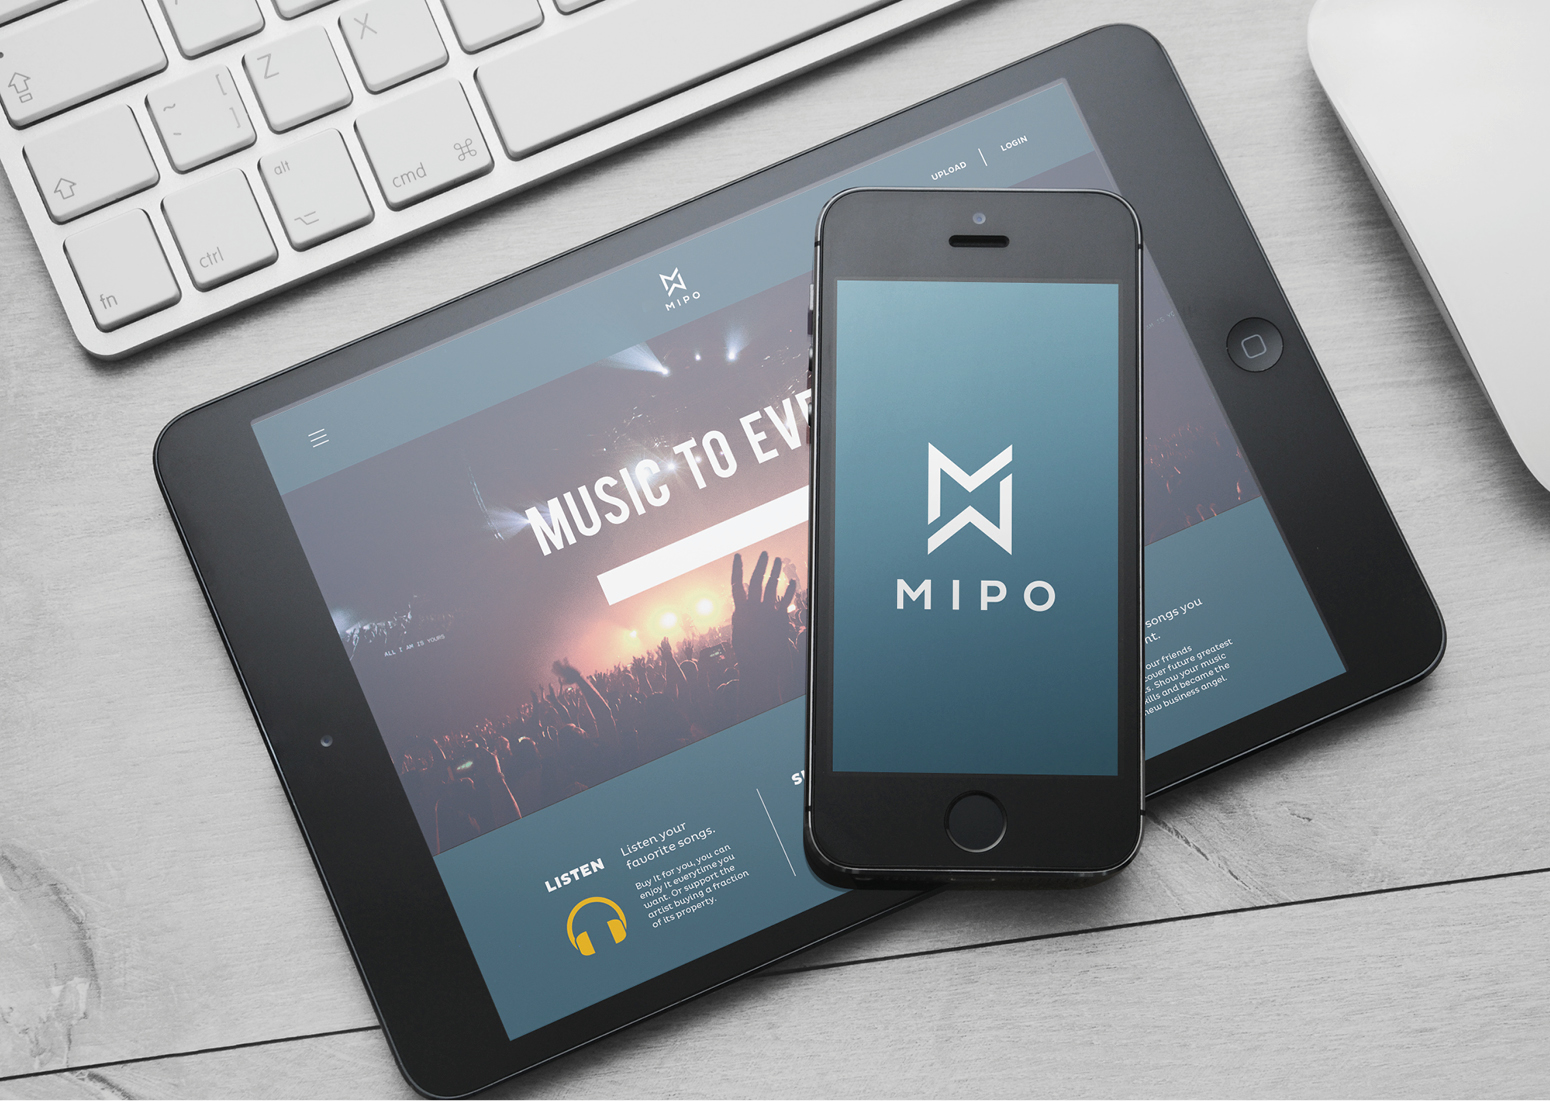 paolo_salmaso_Mipo_musica_logo_web_design_venezia_grafico_graphic_designer - Simple Sign